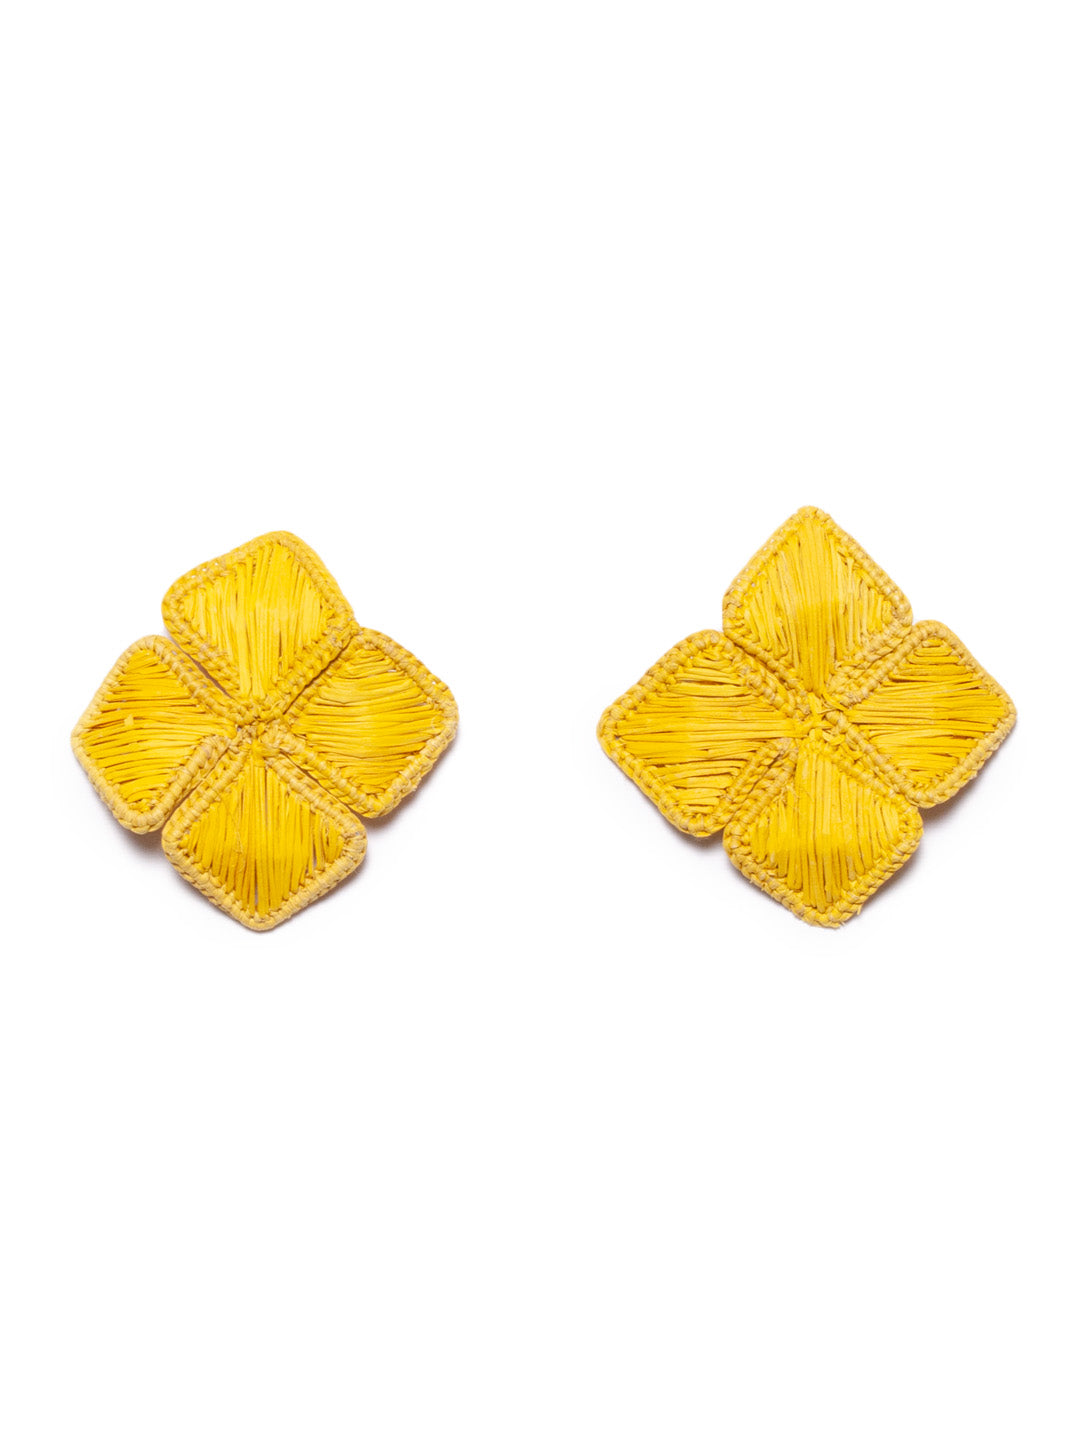 Colombian Iraca palm Flower earrings